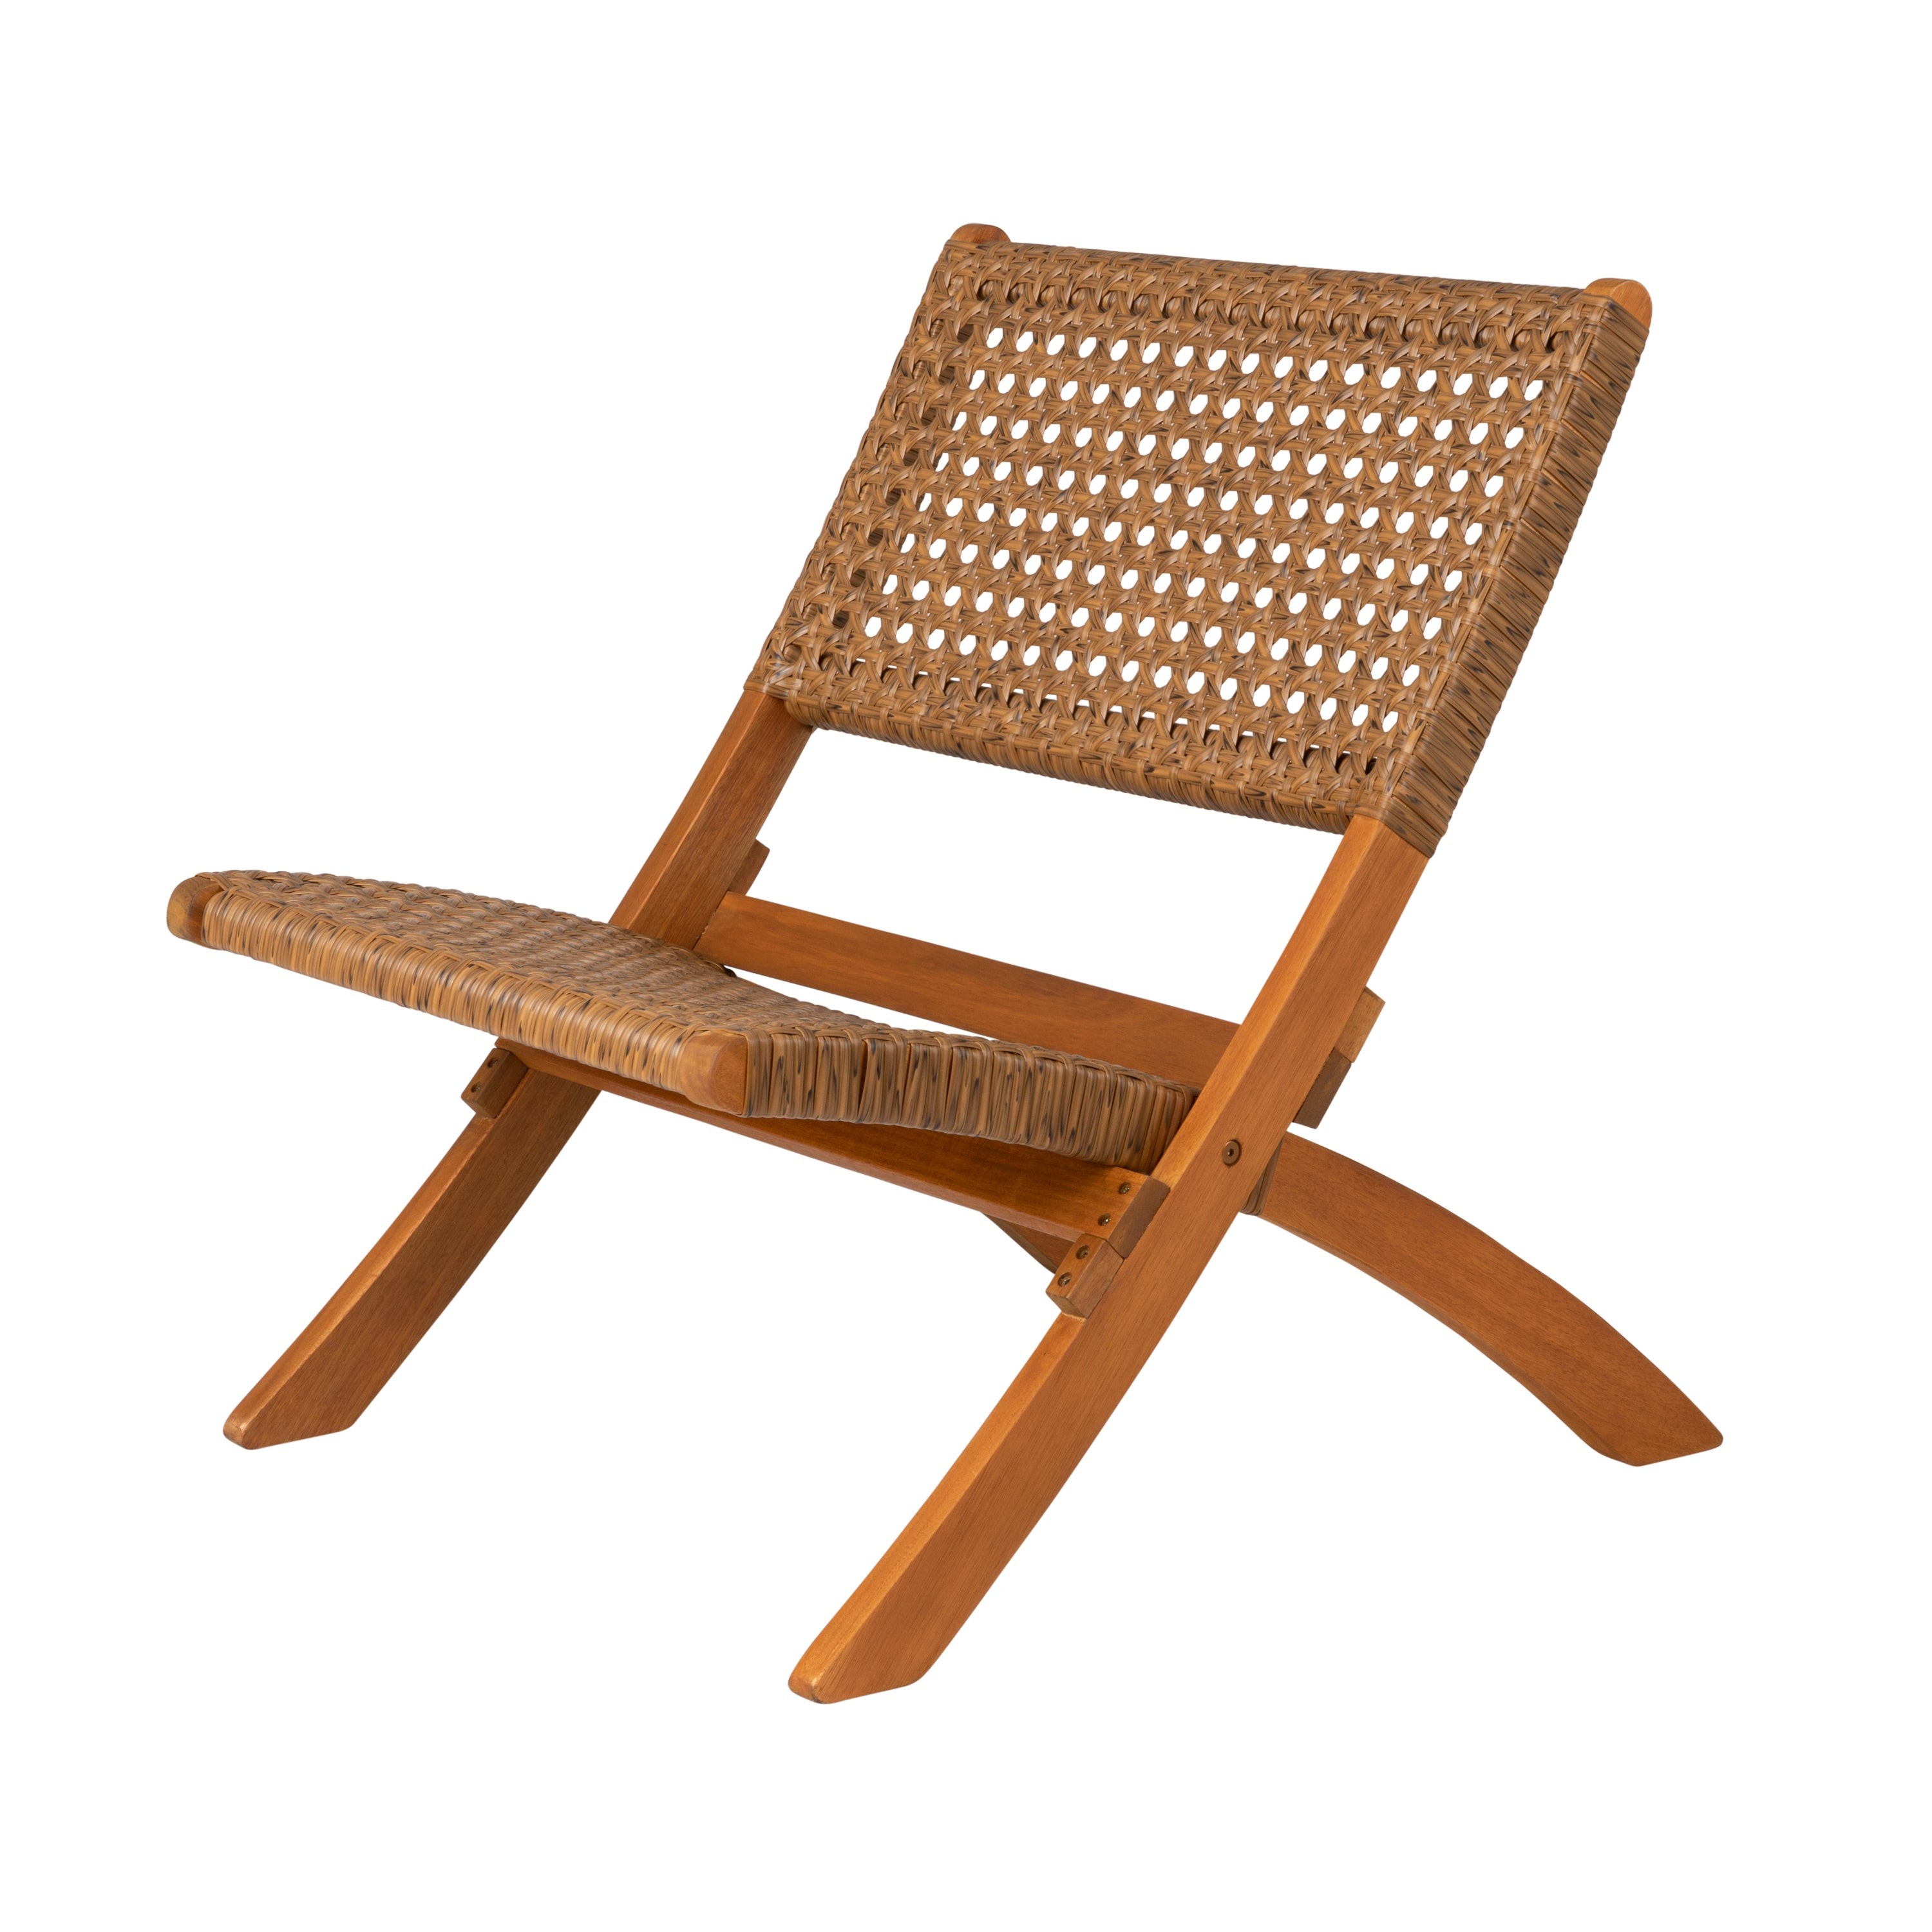 Sava Indoor/Outdoor Folding Chair Tan Wicker